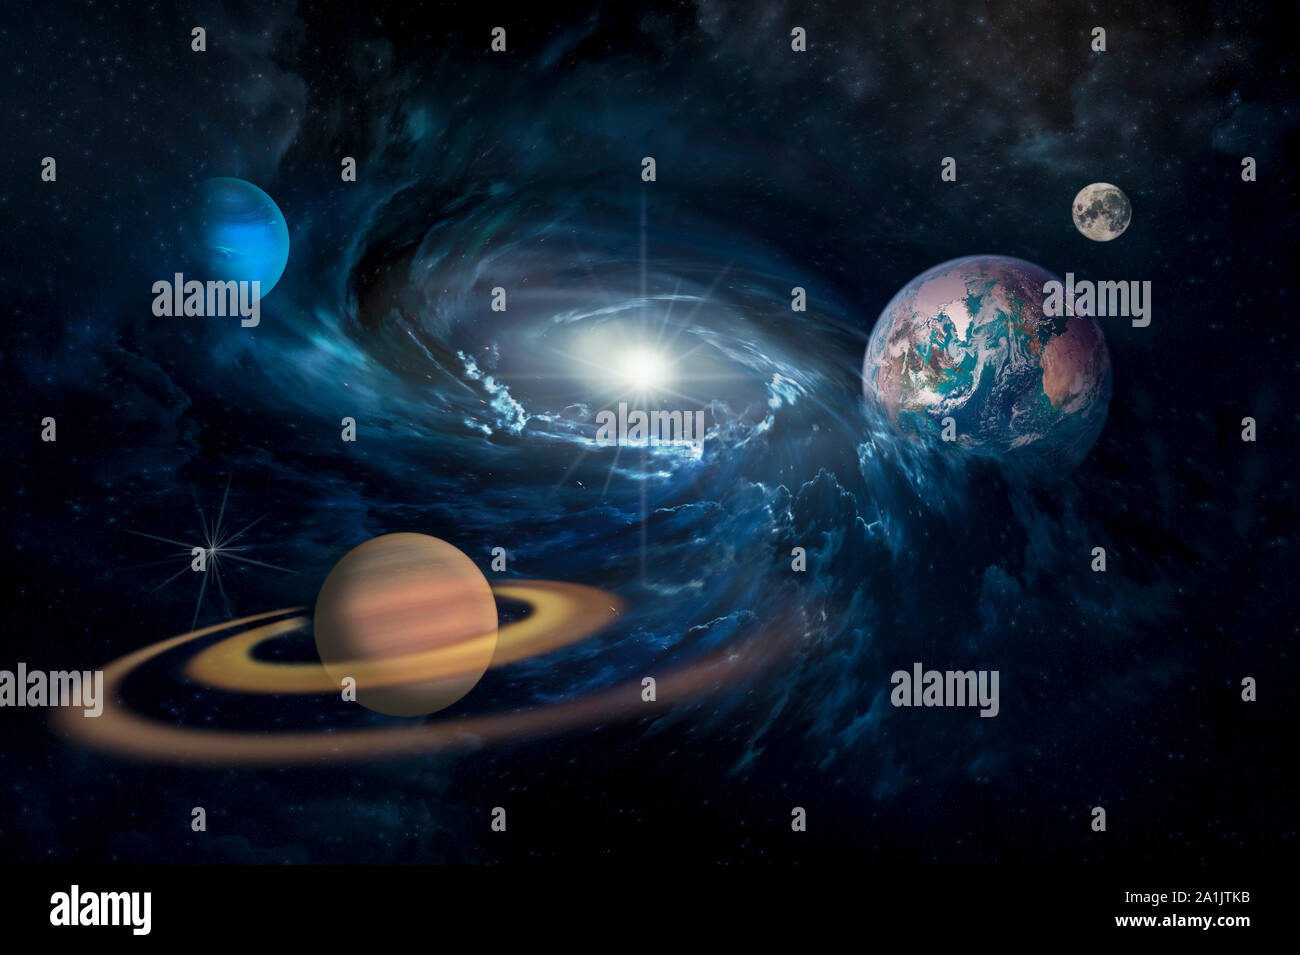 Planeten im Sonnensystem in den sternklaren Universum mit Kopie Raum Elemente dieses Bild von der NASA eingerichtet Stockfoto